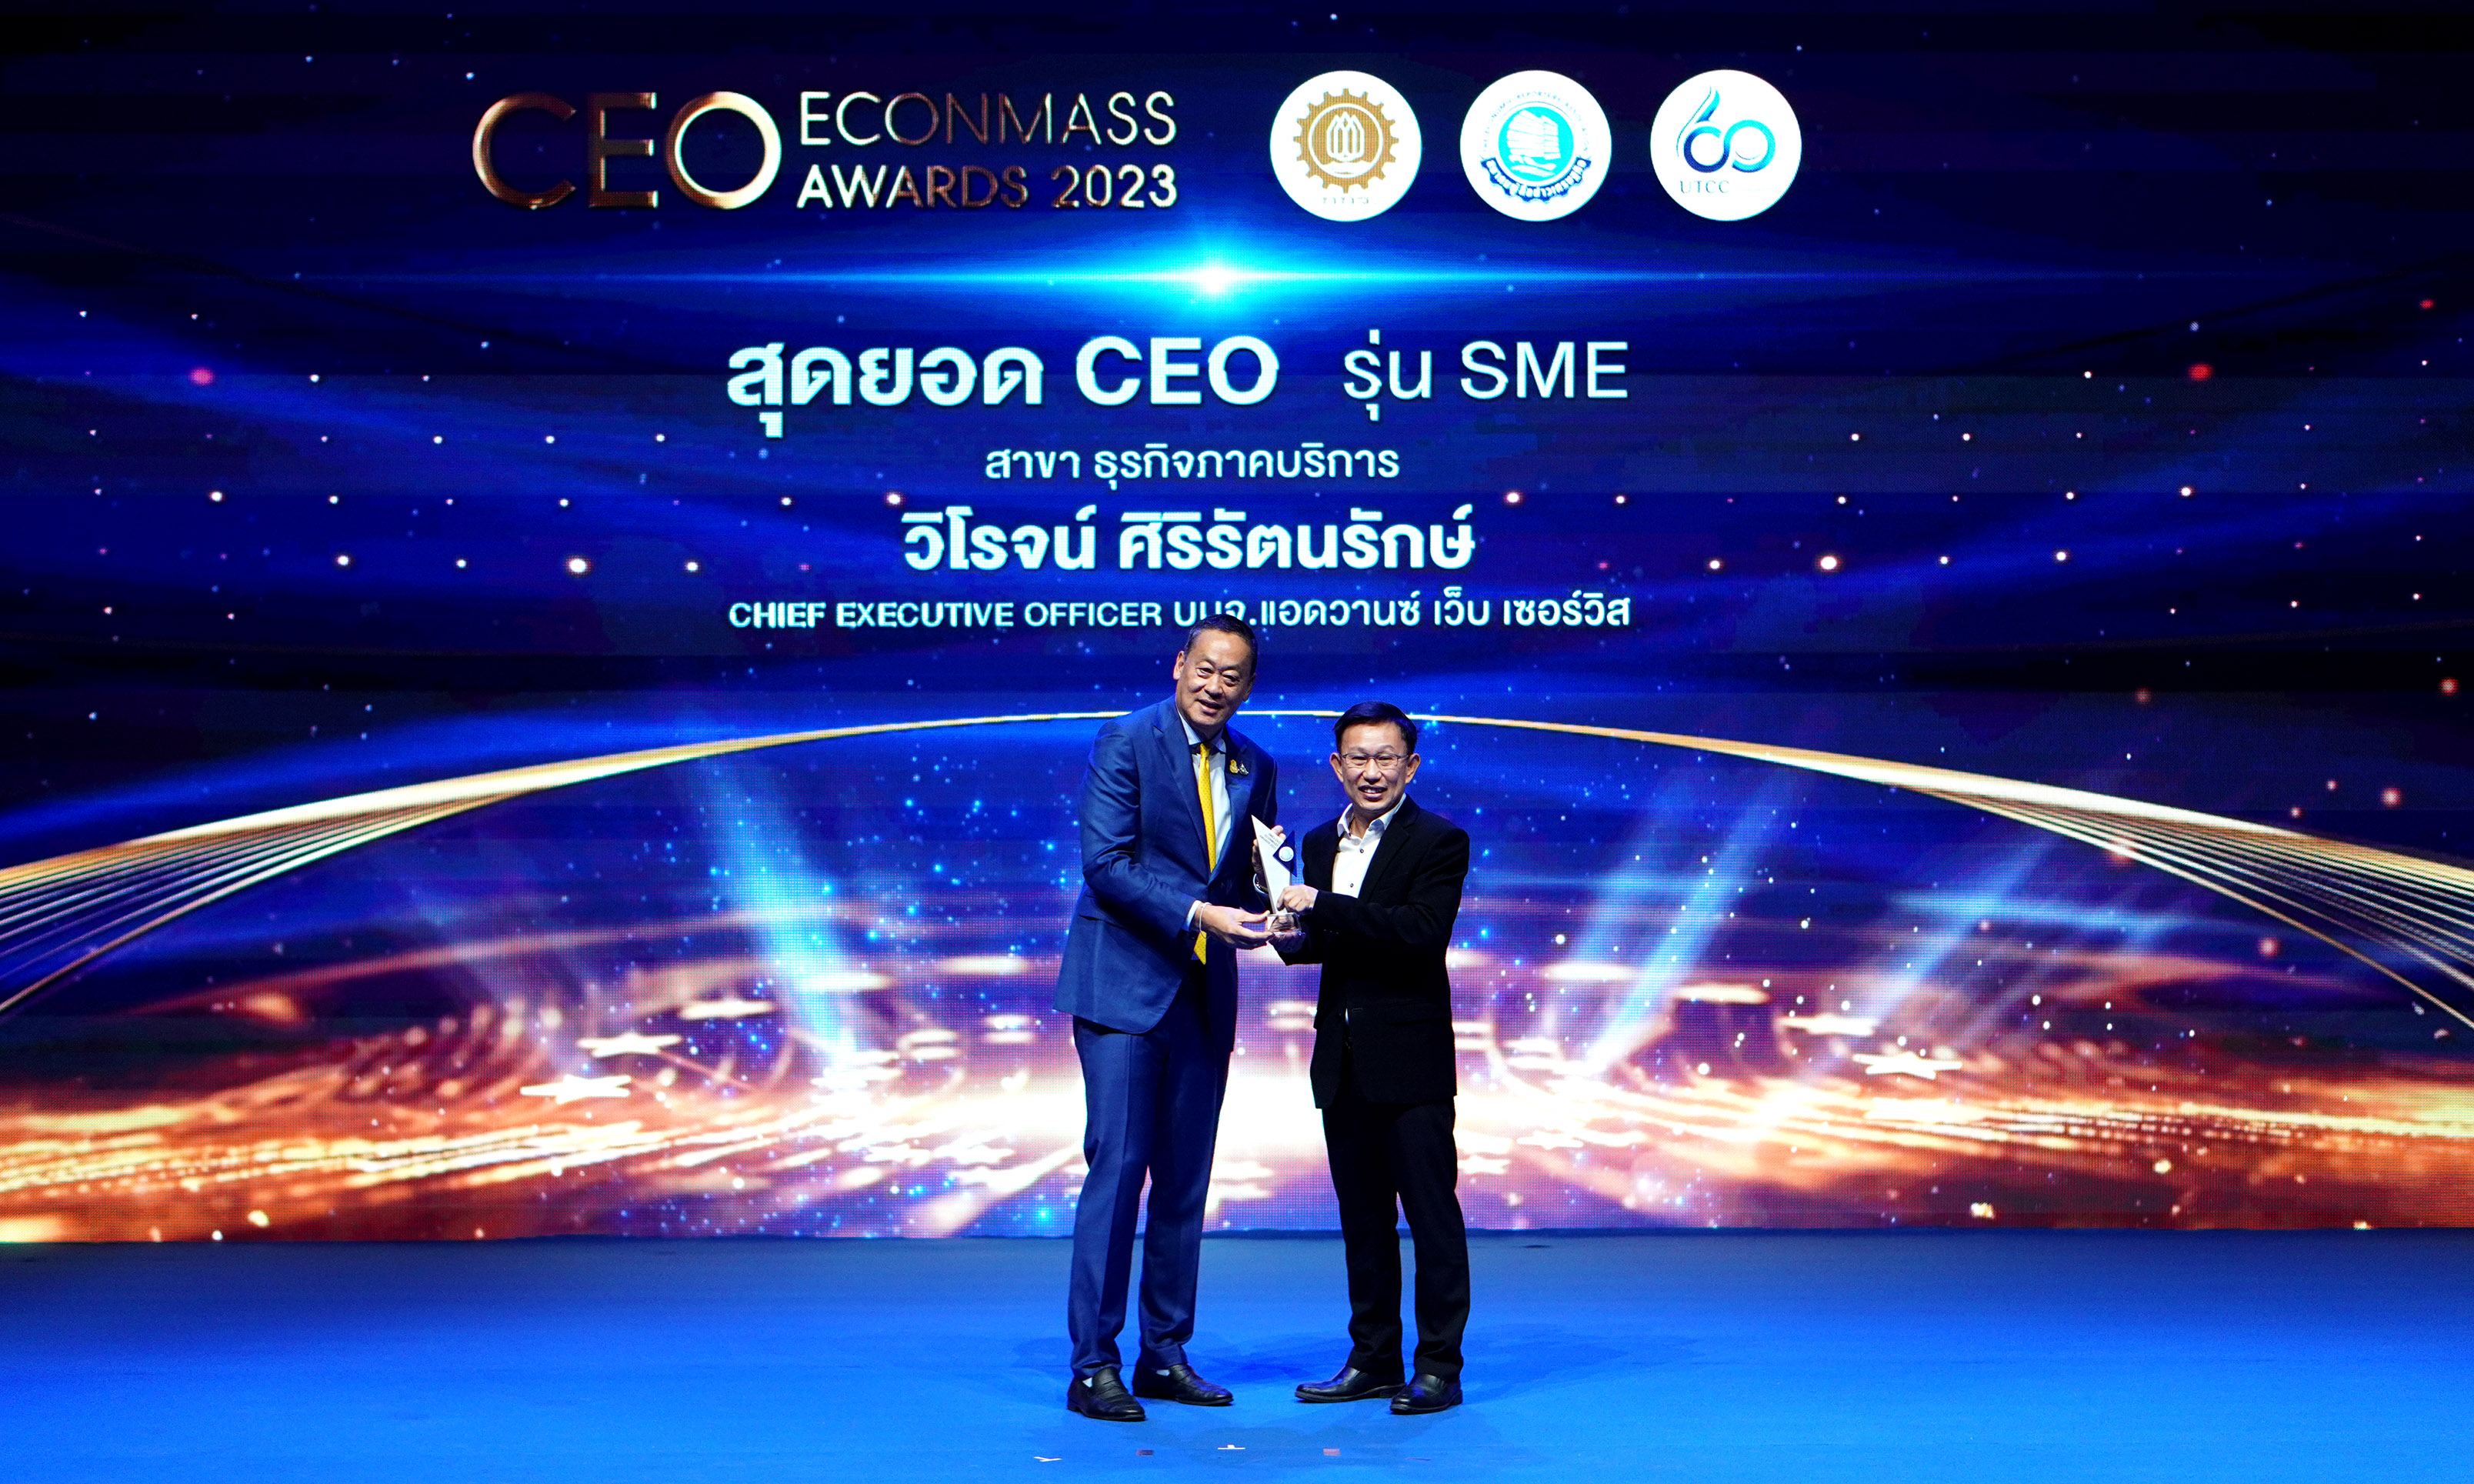 วิโรจน์ AWS คว้า สุดยอด CEO รุ่น SMEs ปี 2566 สาขาธุรกิจภาคบริการ ในงาน Thailand CEO ECONMASS Awards 2023